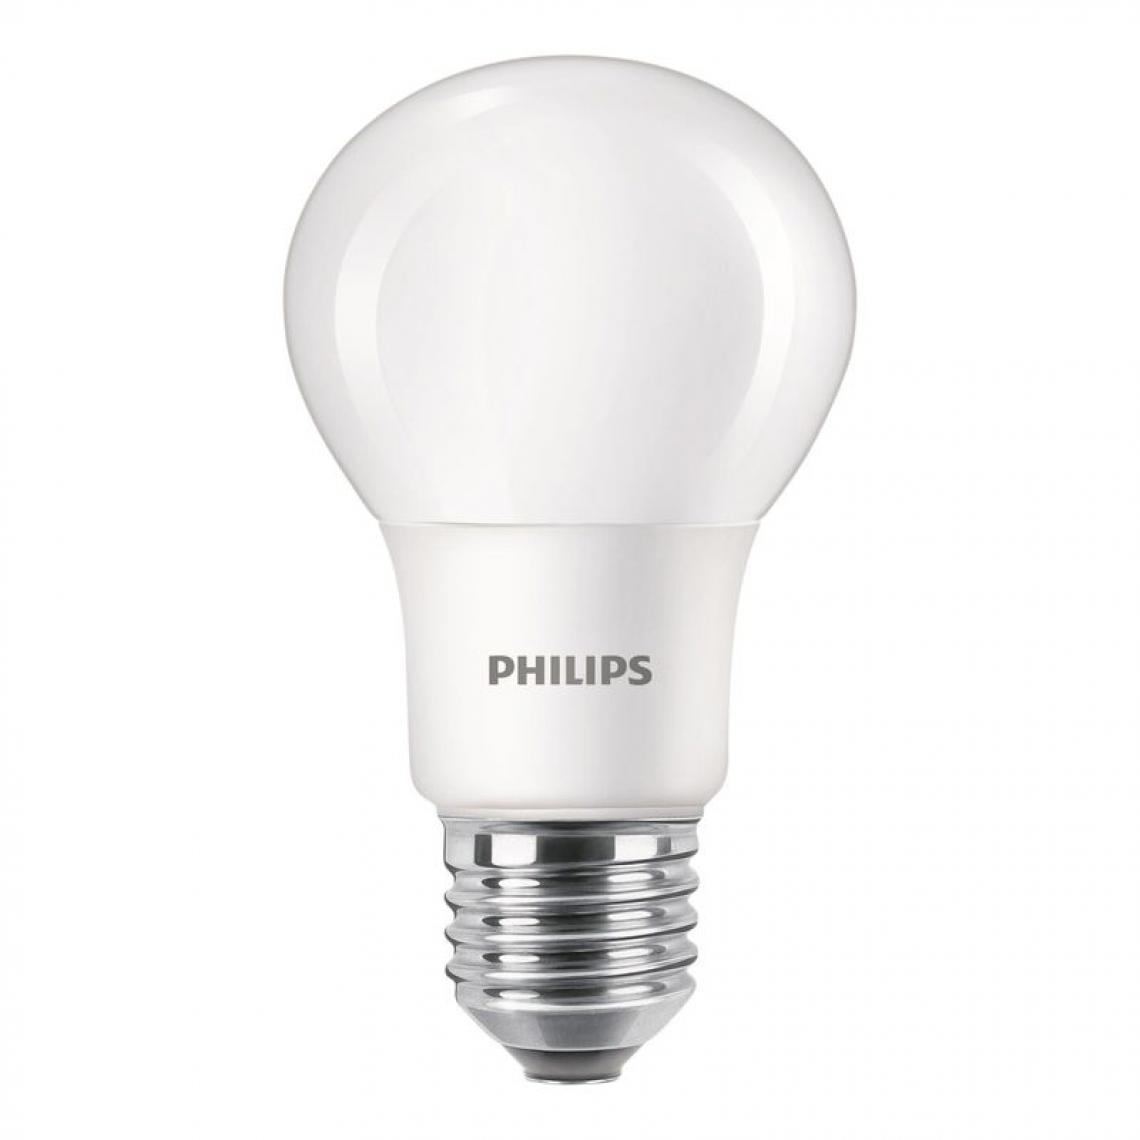 Philips - lot de 2 ampoules LED dépolies PHILIPS E27 standard EQ60W - Ampoules LED